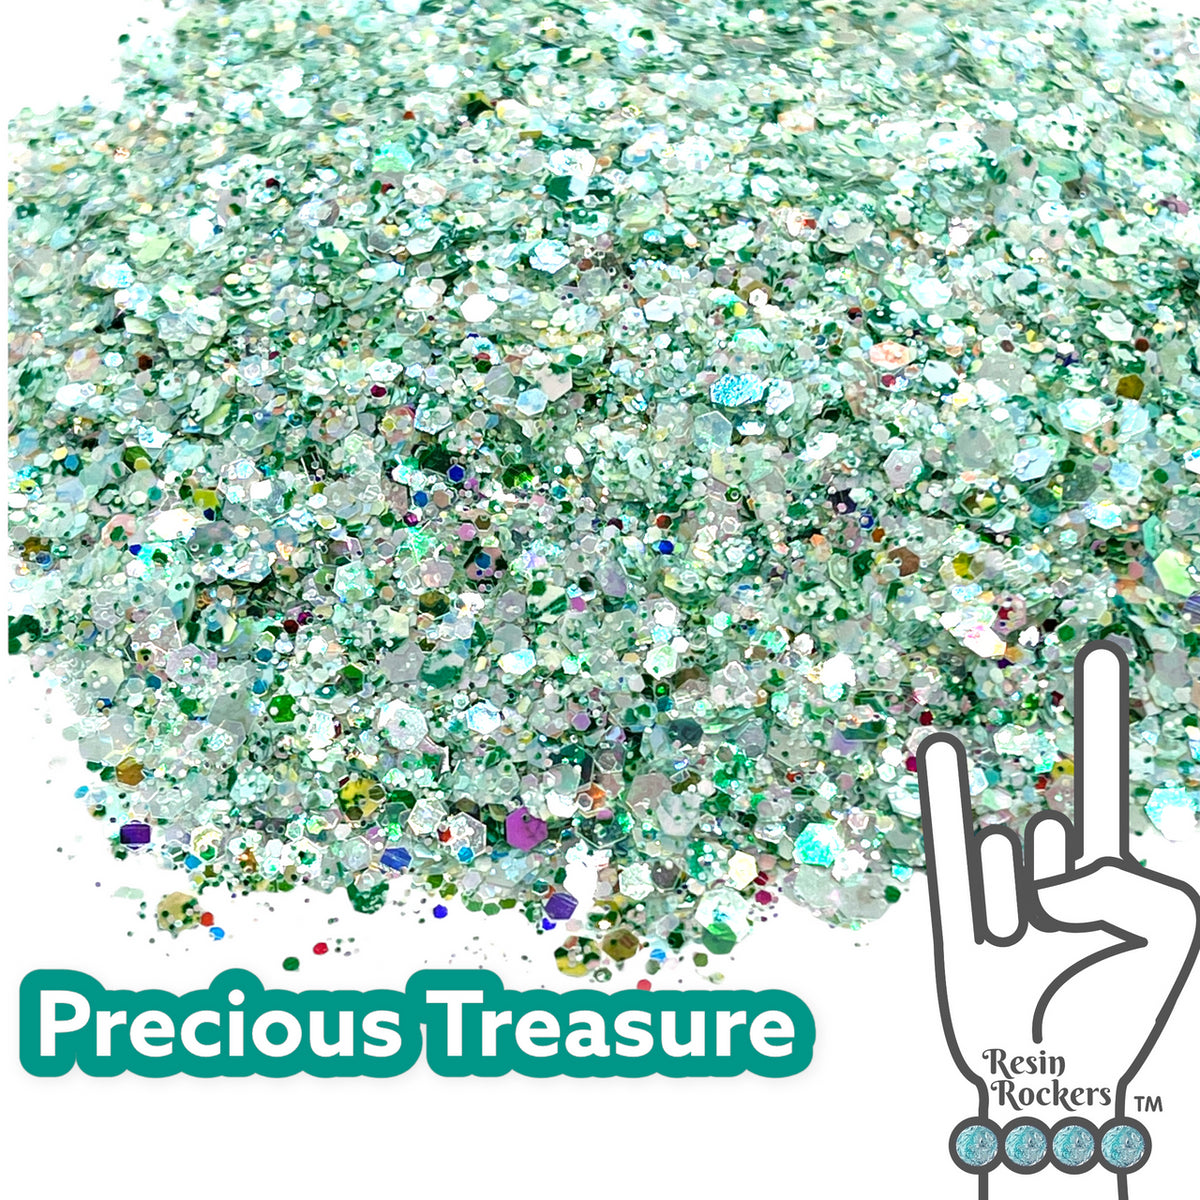 Precious Treasure Premium Pixie for Poxy Chunky Glitter Mix